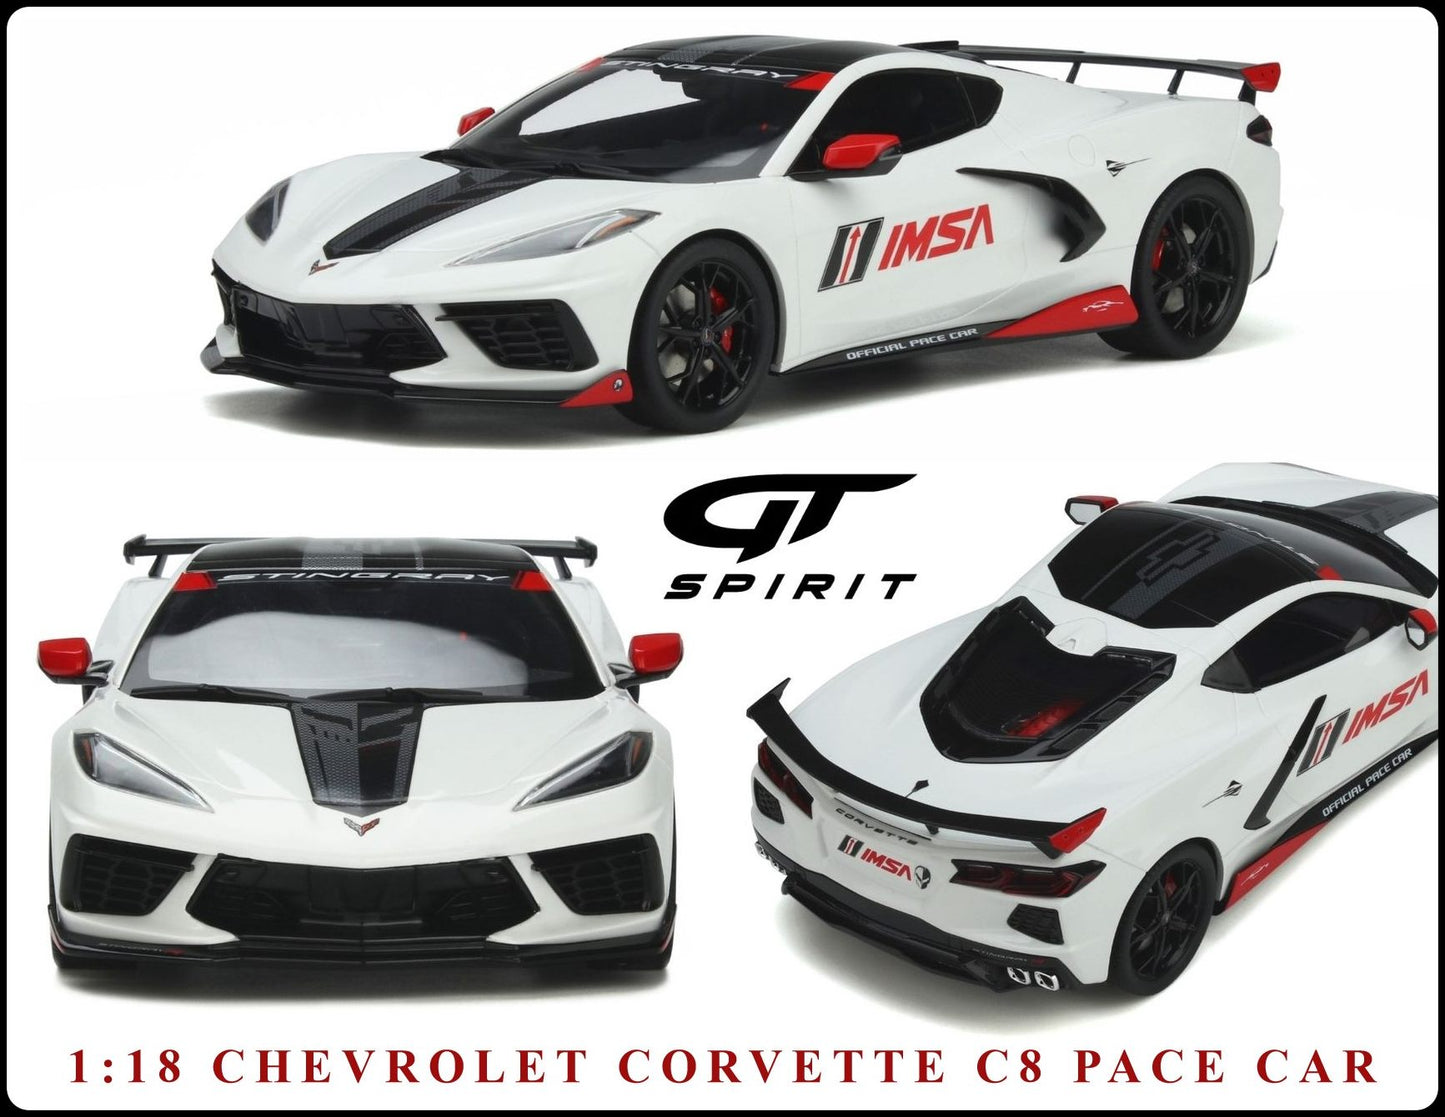 1:18 Chevrolet Corvette C8 Pace Car IMSA, hvid, 2020, GT Spirit, GT370, lukket model, limited